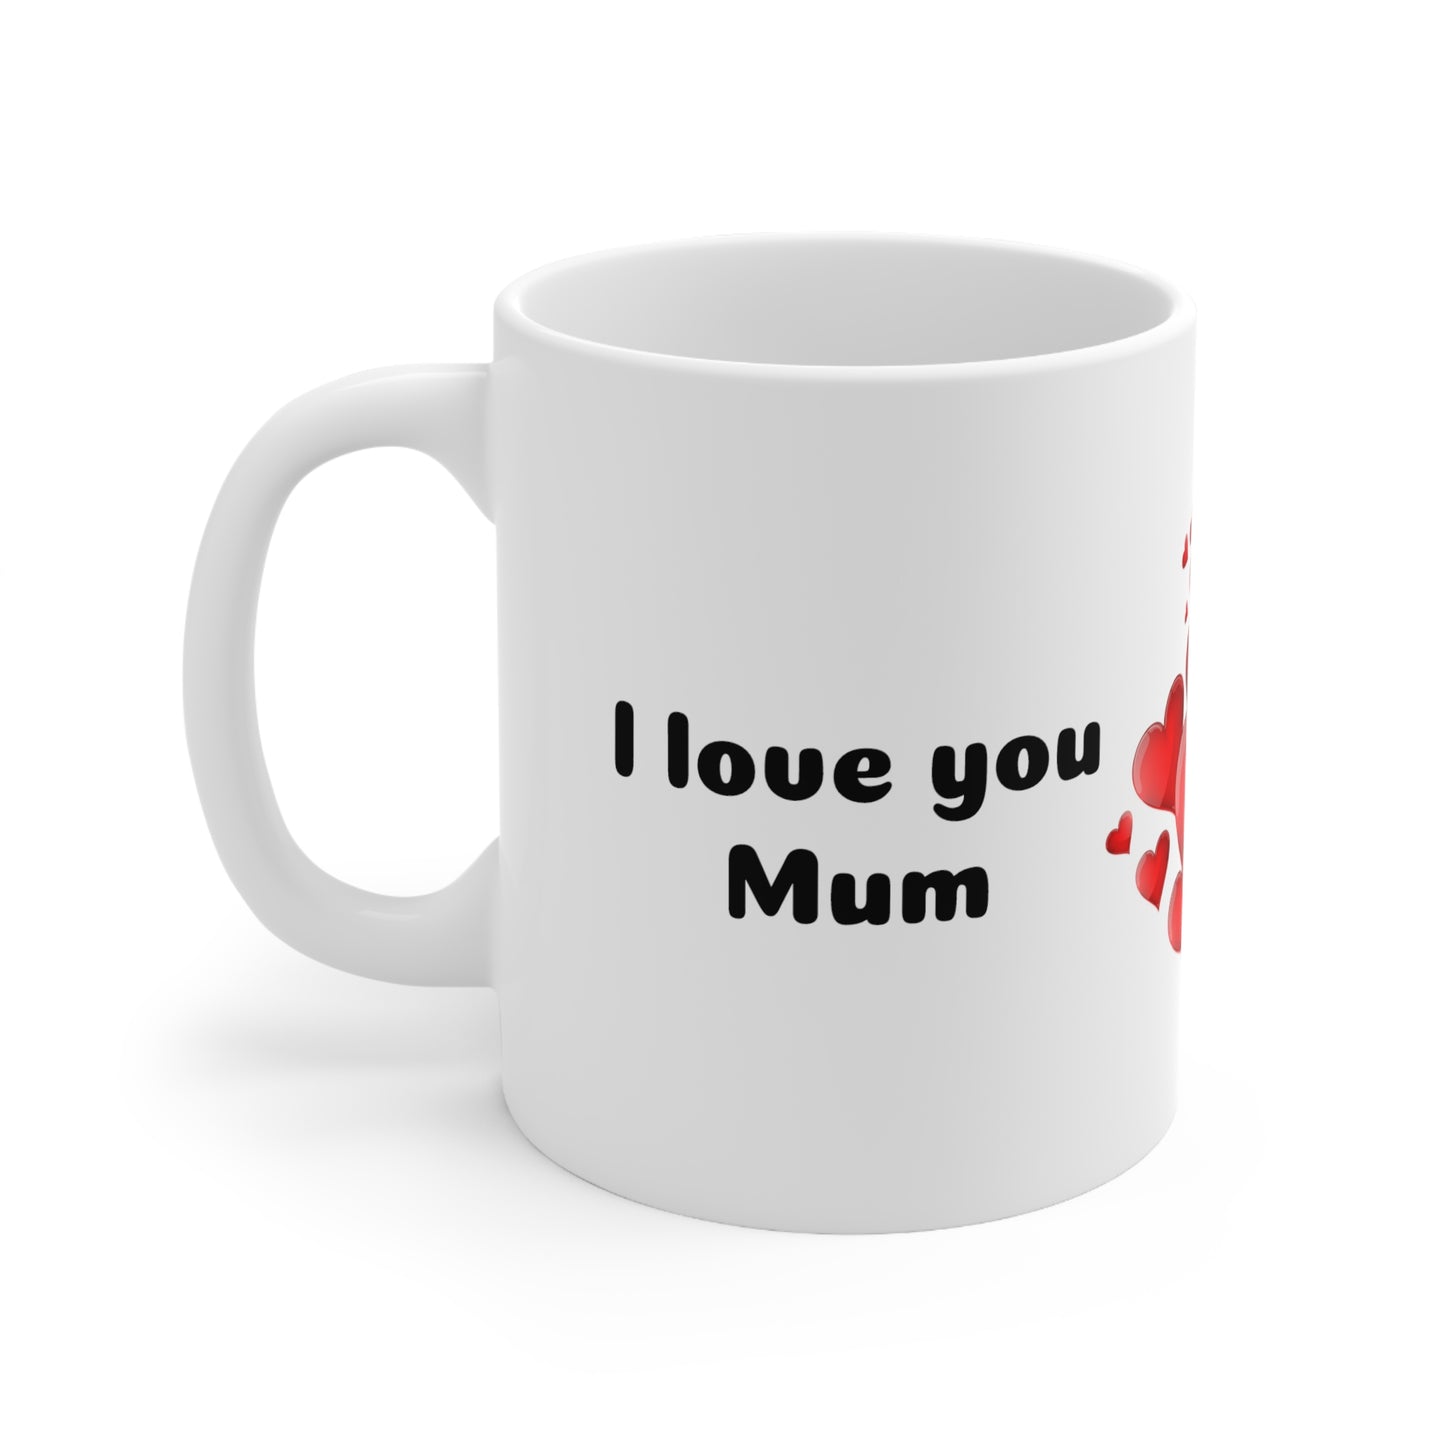 Ceramic Mug - White Accent - 11oz / 0.33 l (For mum)